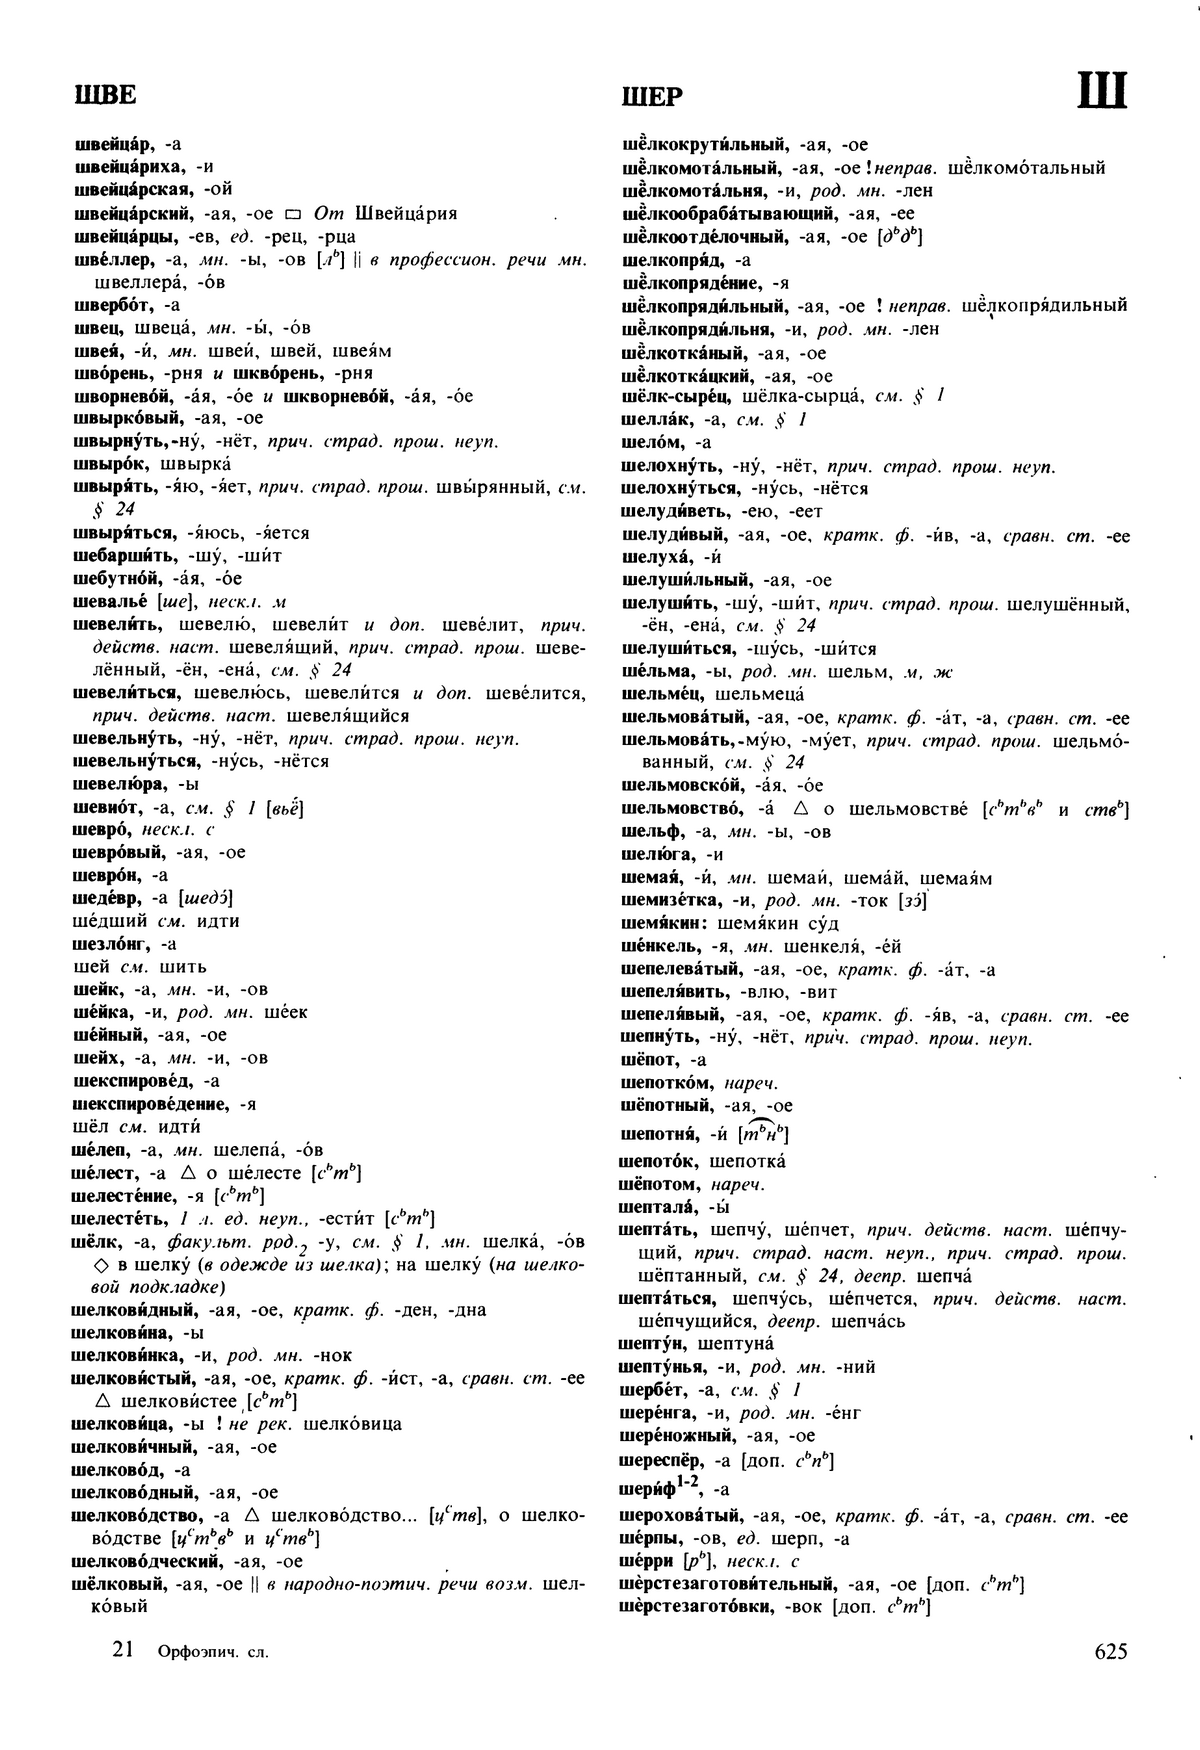 Фотокопия pdf / скан страницы 625 орфоэпического словаря под редакцией Аванесова (5 издание, 1989 год)